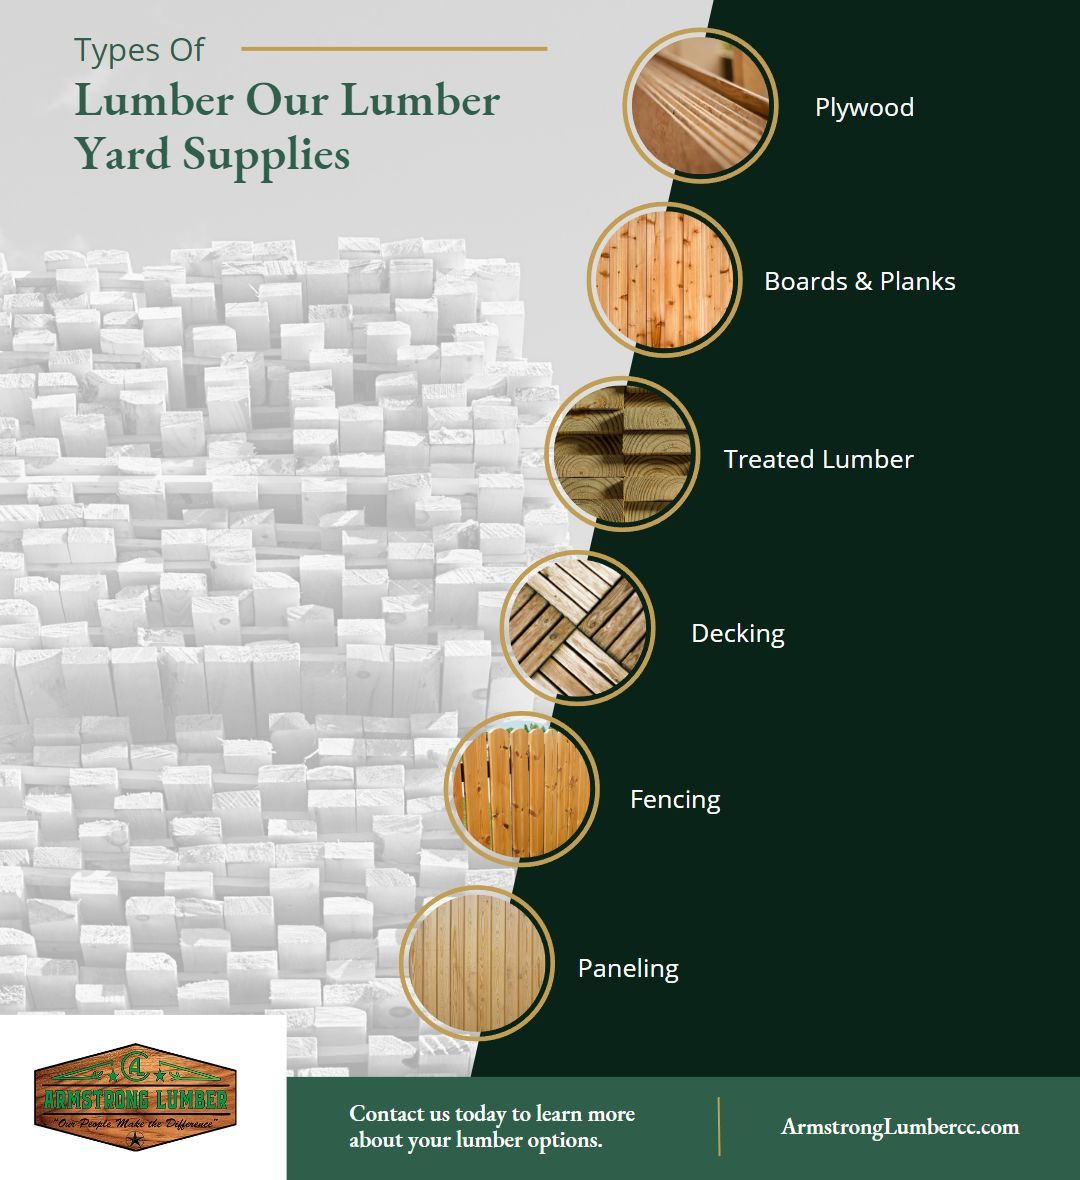 M33903 - Types of Lumber Our Lumber Yard Supplies.jpg